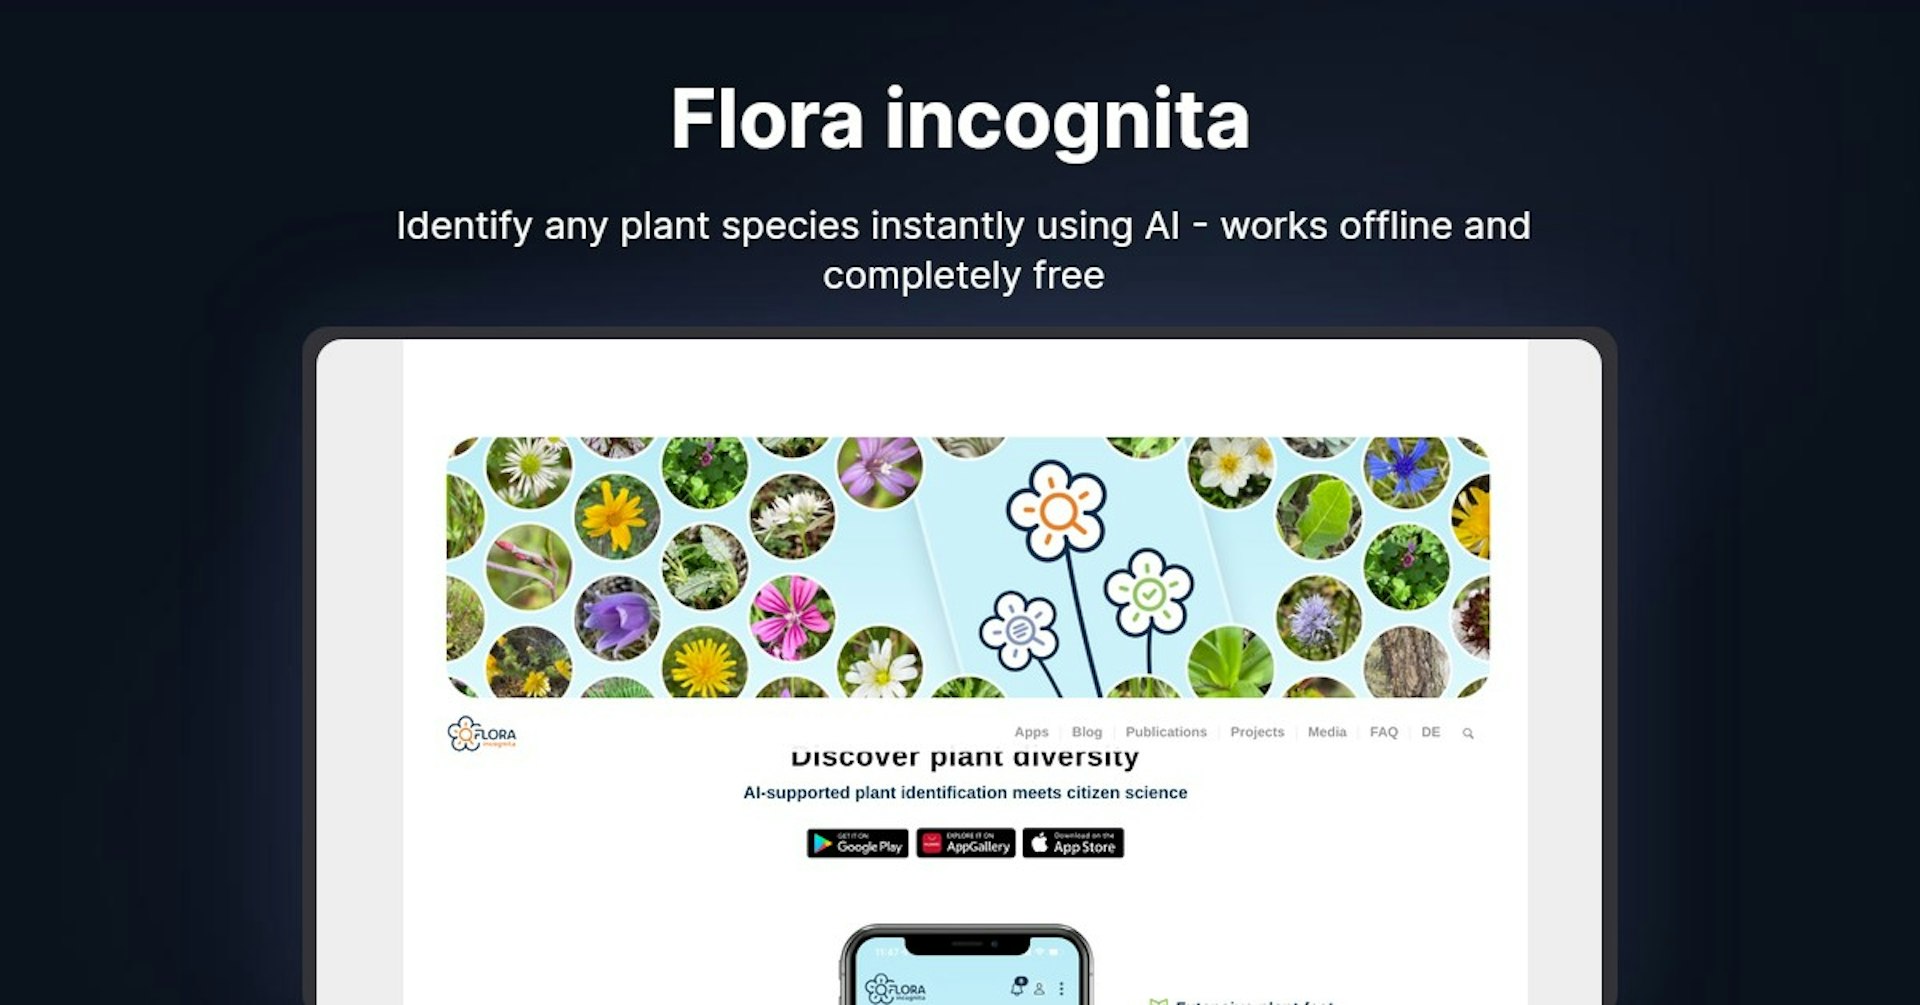 Flora incognita